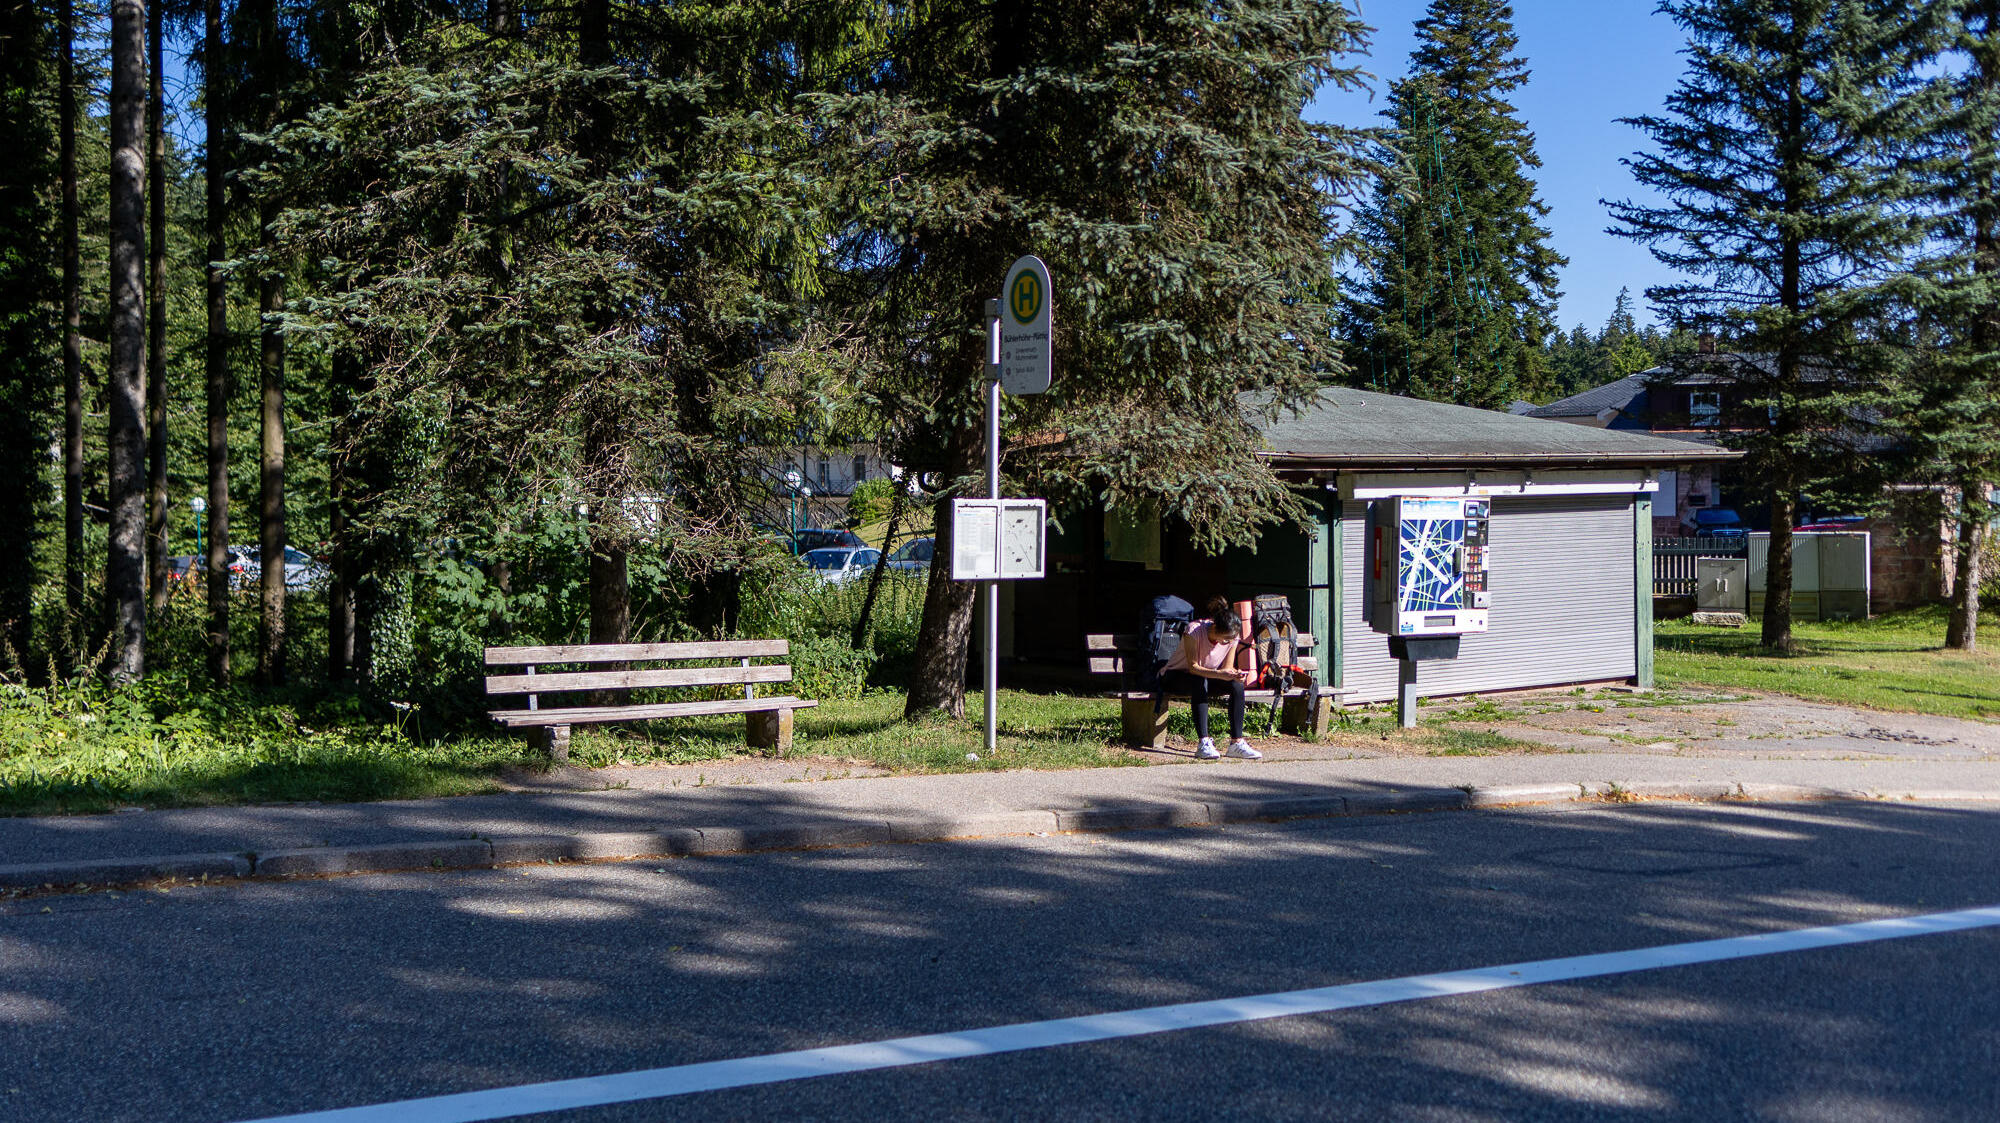 Das Bild zeigt eine sonnenbeschienene Bushaltestelle. Auf der Wartebank sitzt eine Person. Im Hintergrund stehen einige große Nadelbäume. 